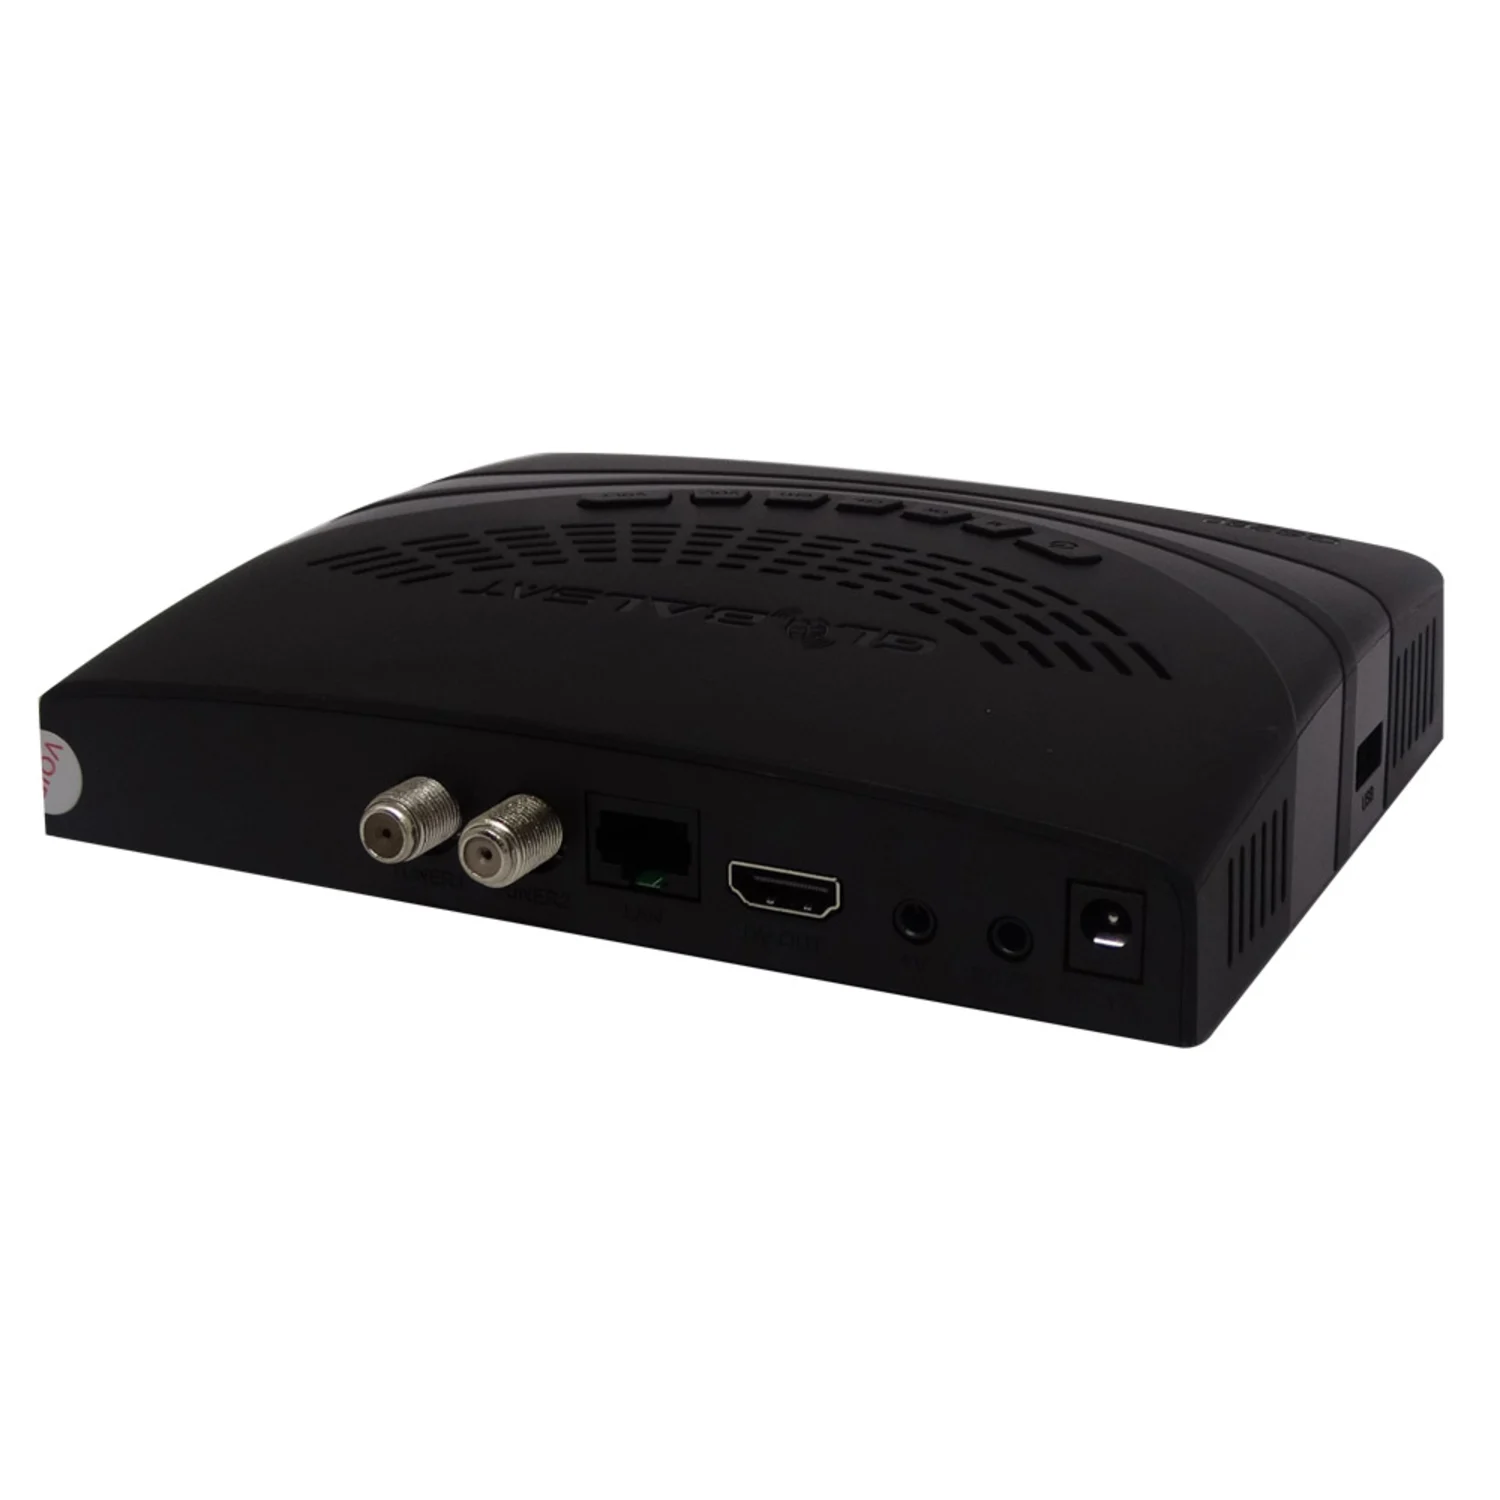 Receptor Globalsat GS-260 VOD / WiFi - Preto